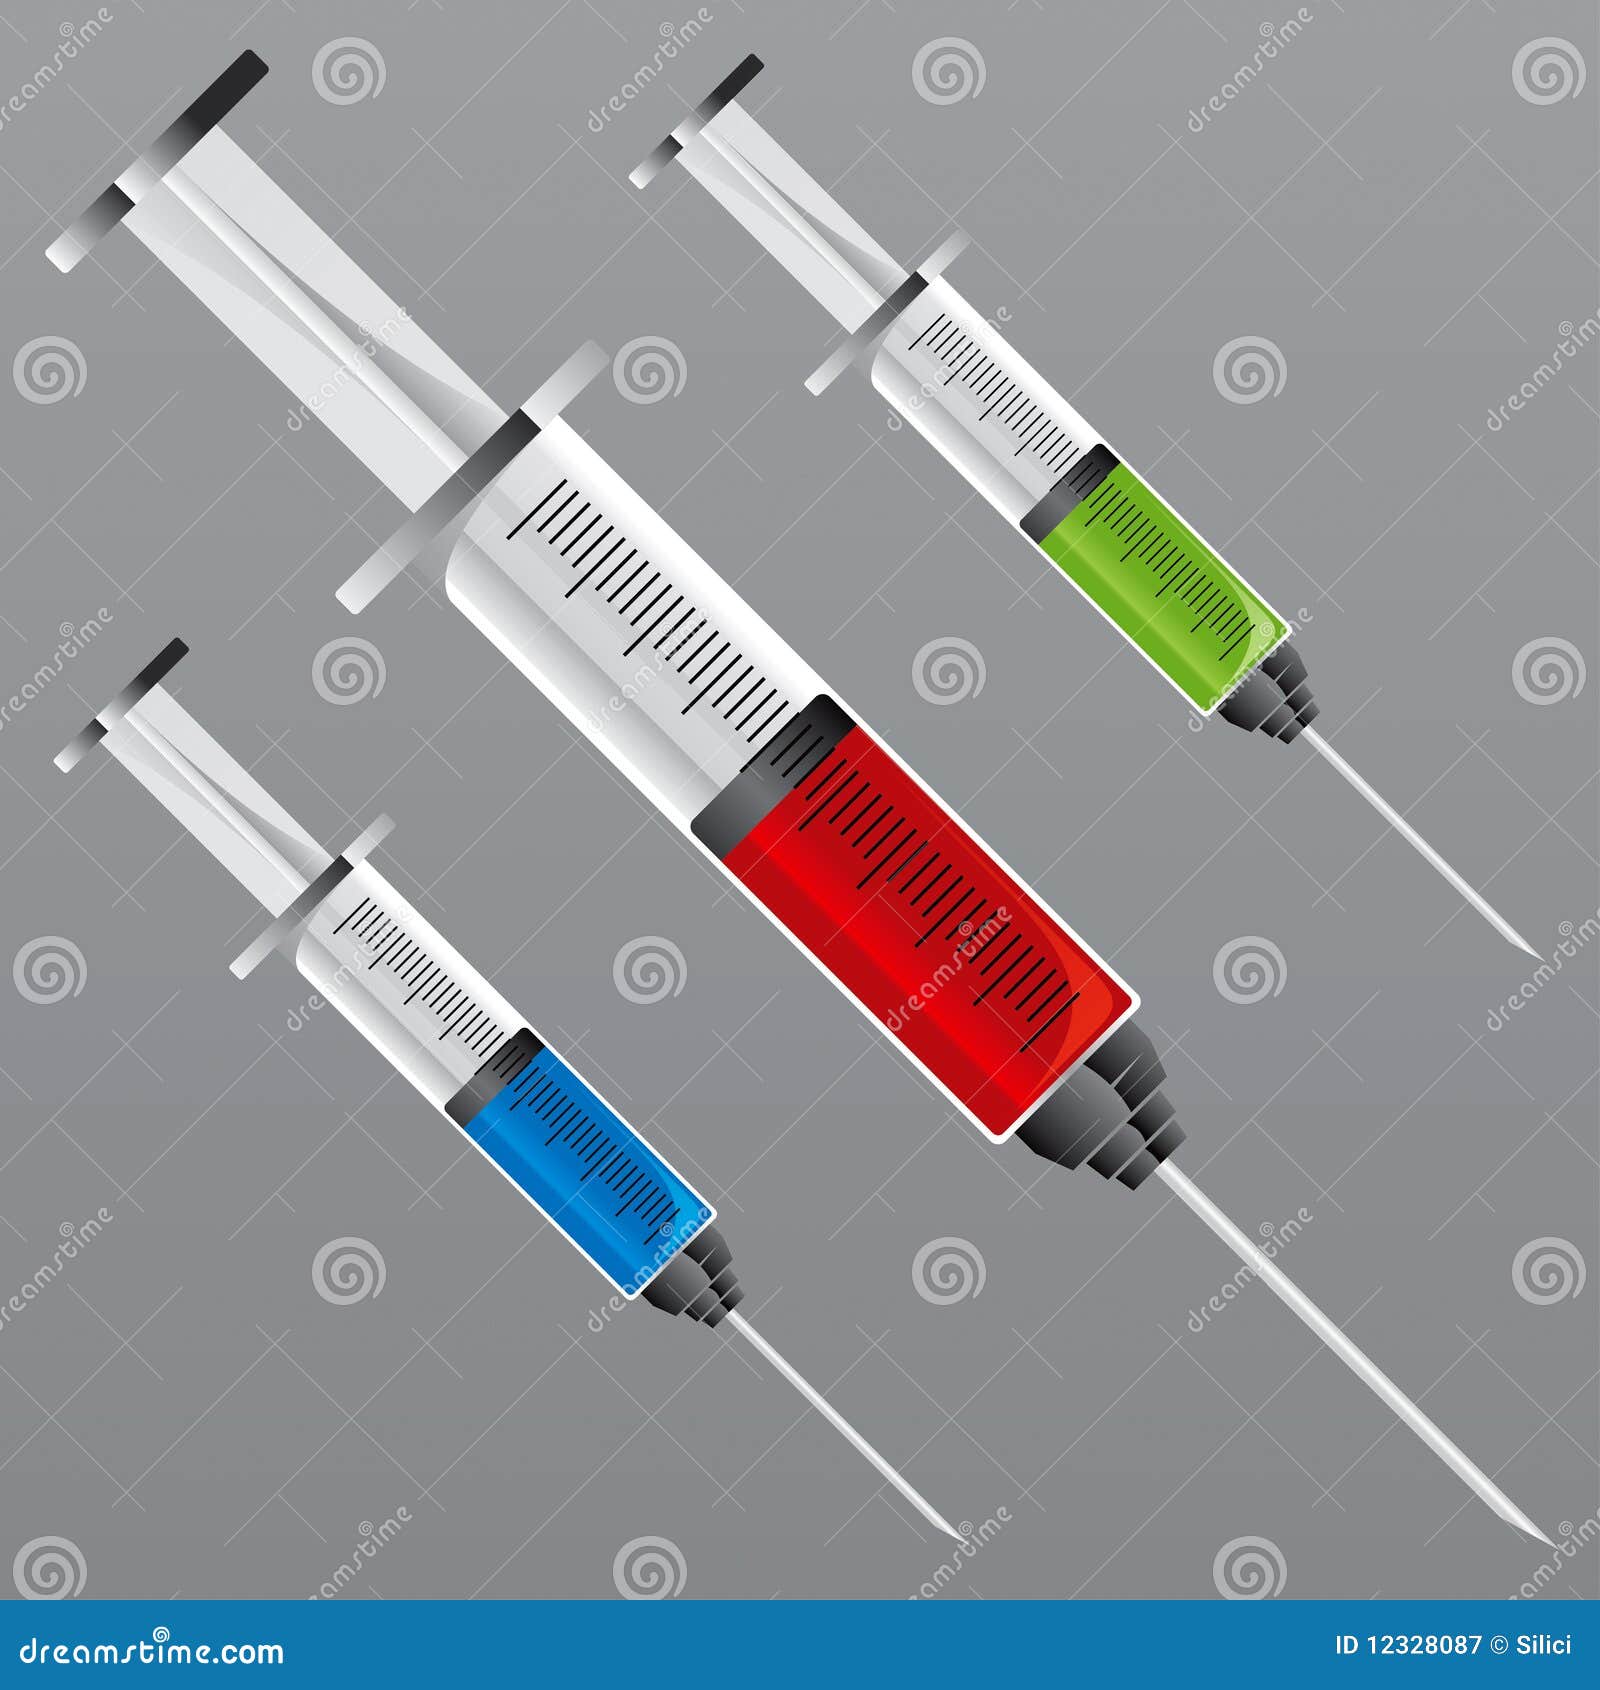 syringe 1